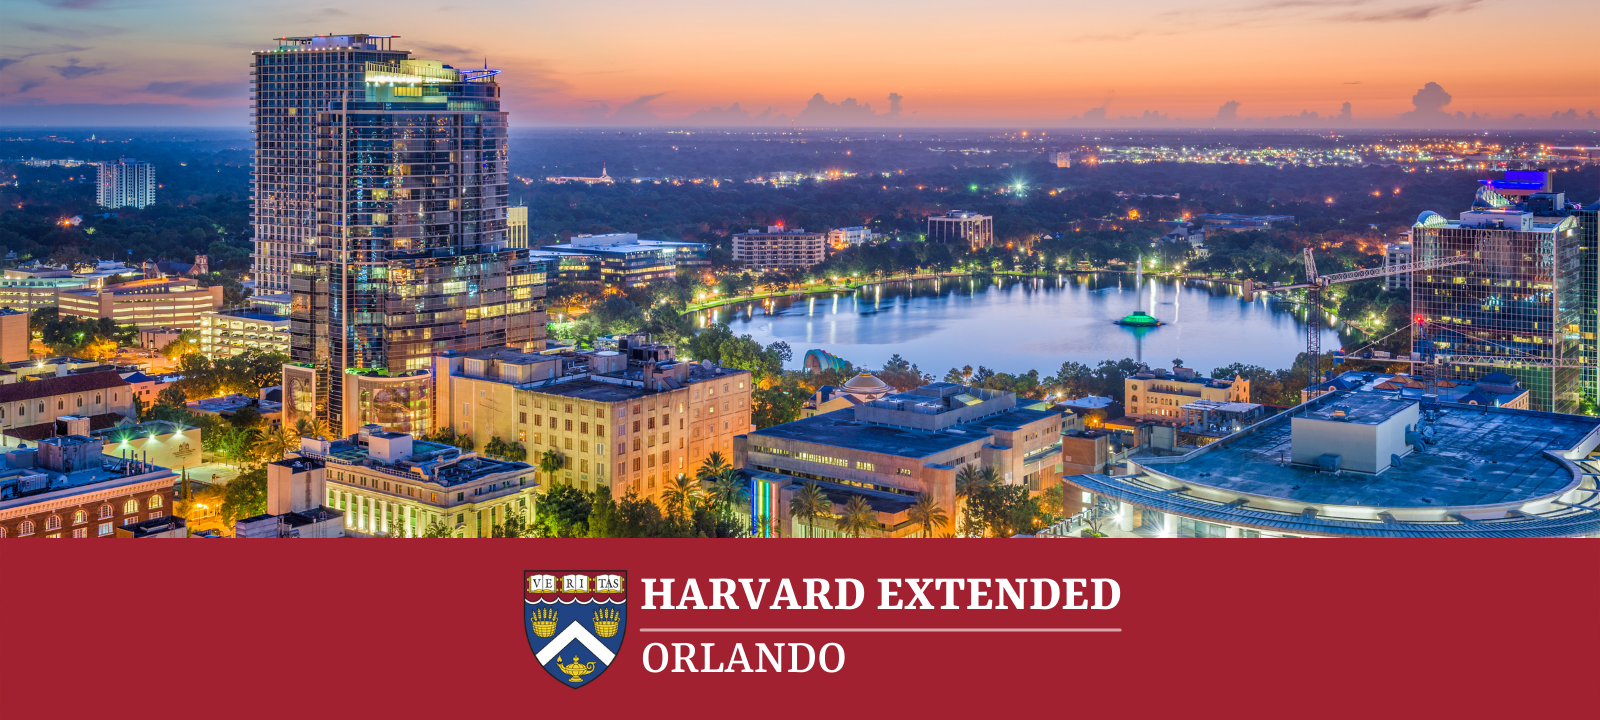 Harvard Extended Orlando 4_15_22